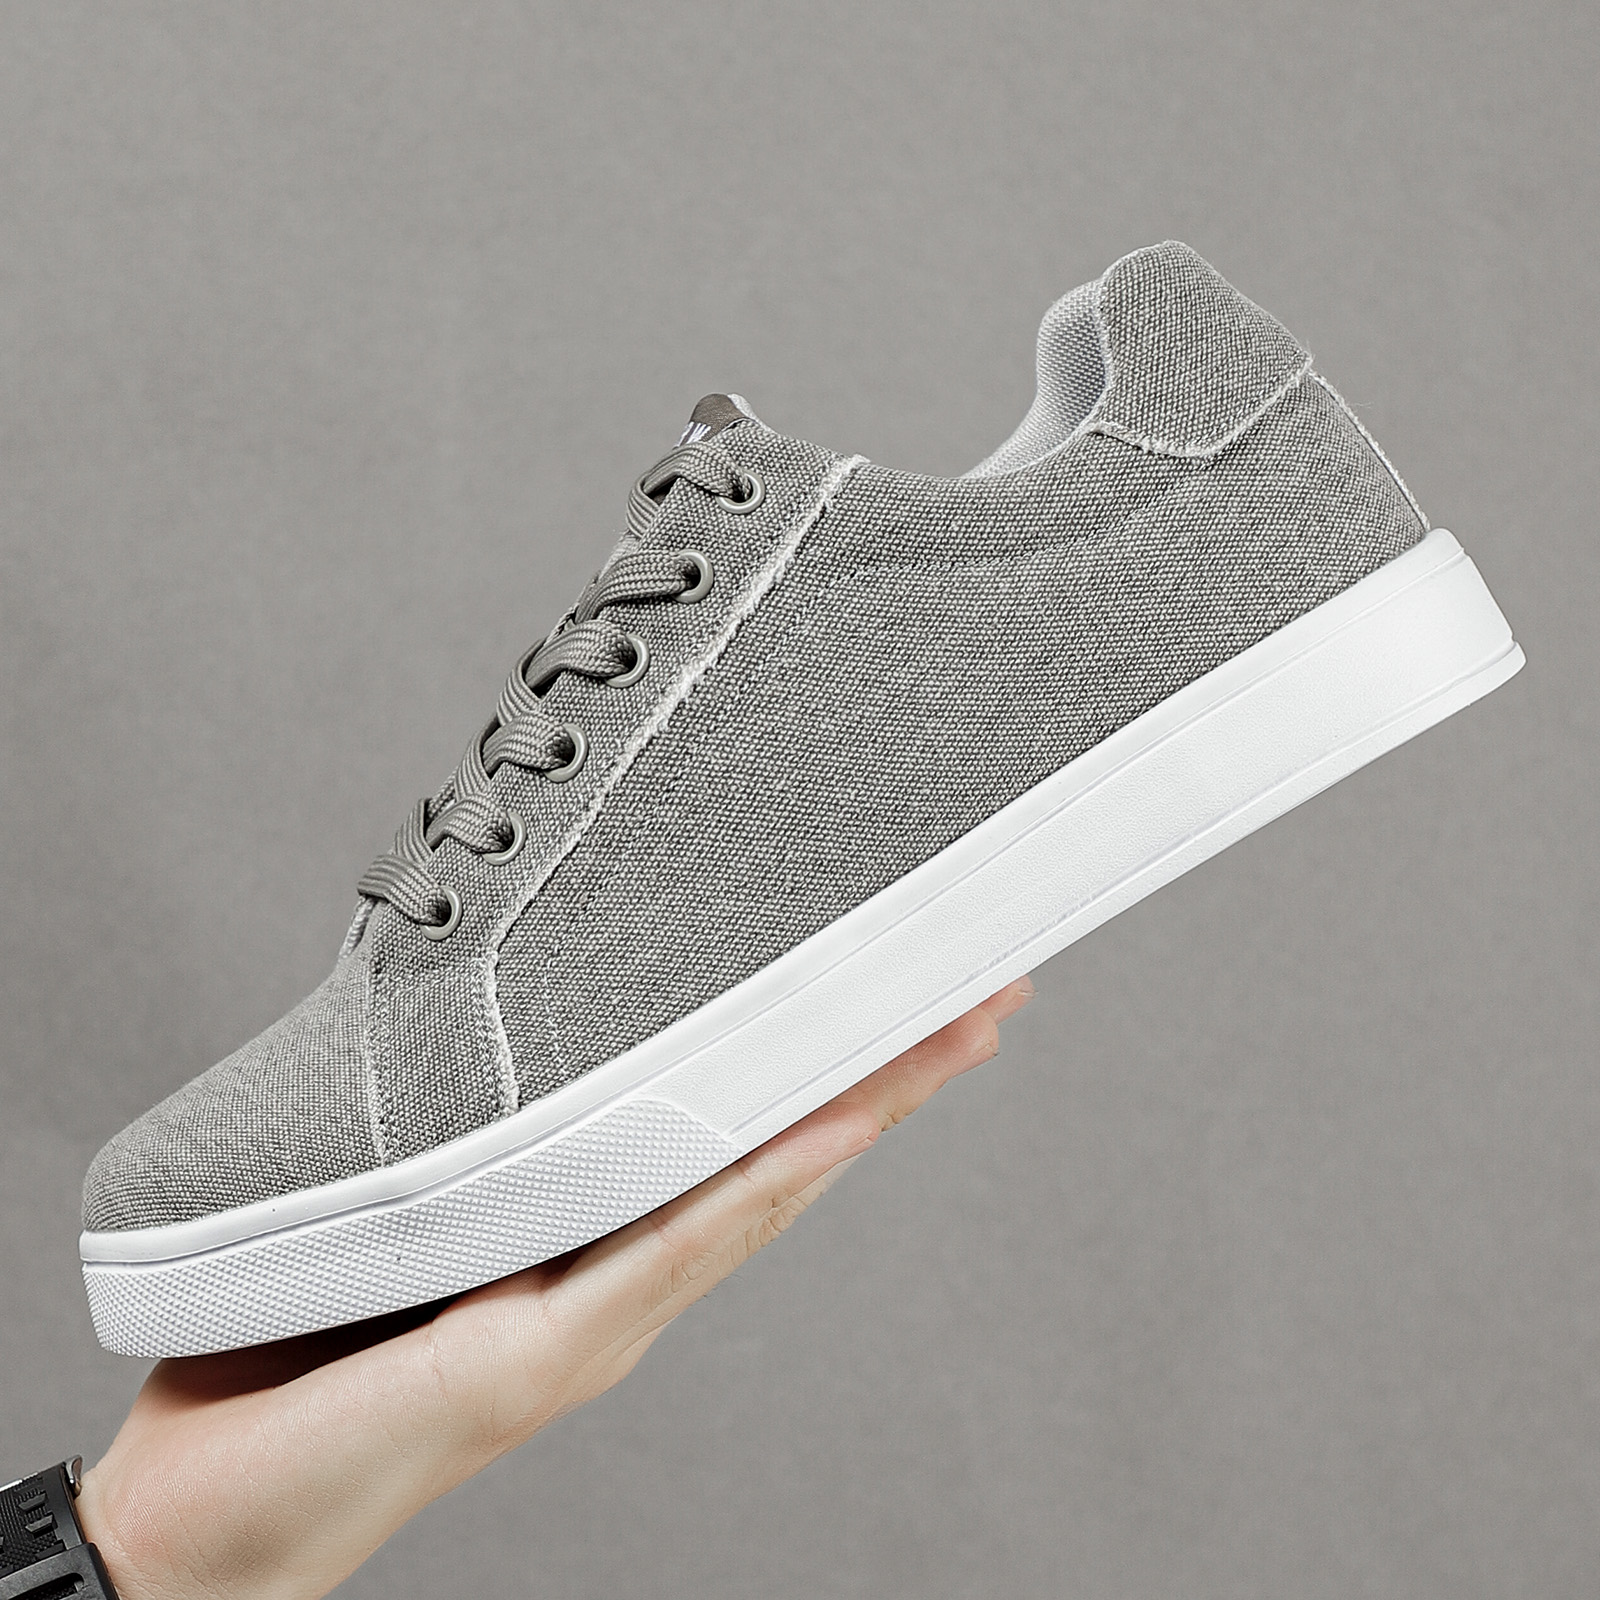 canvas skate shoes men s trendy wear resistant non slip details 3